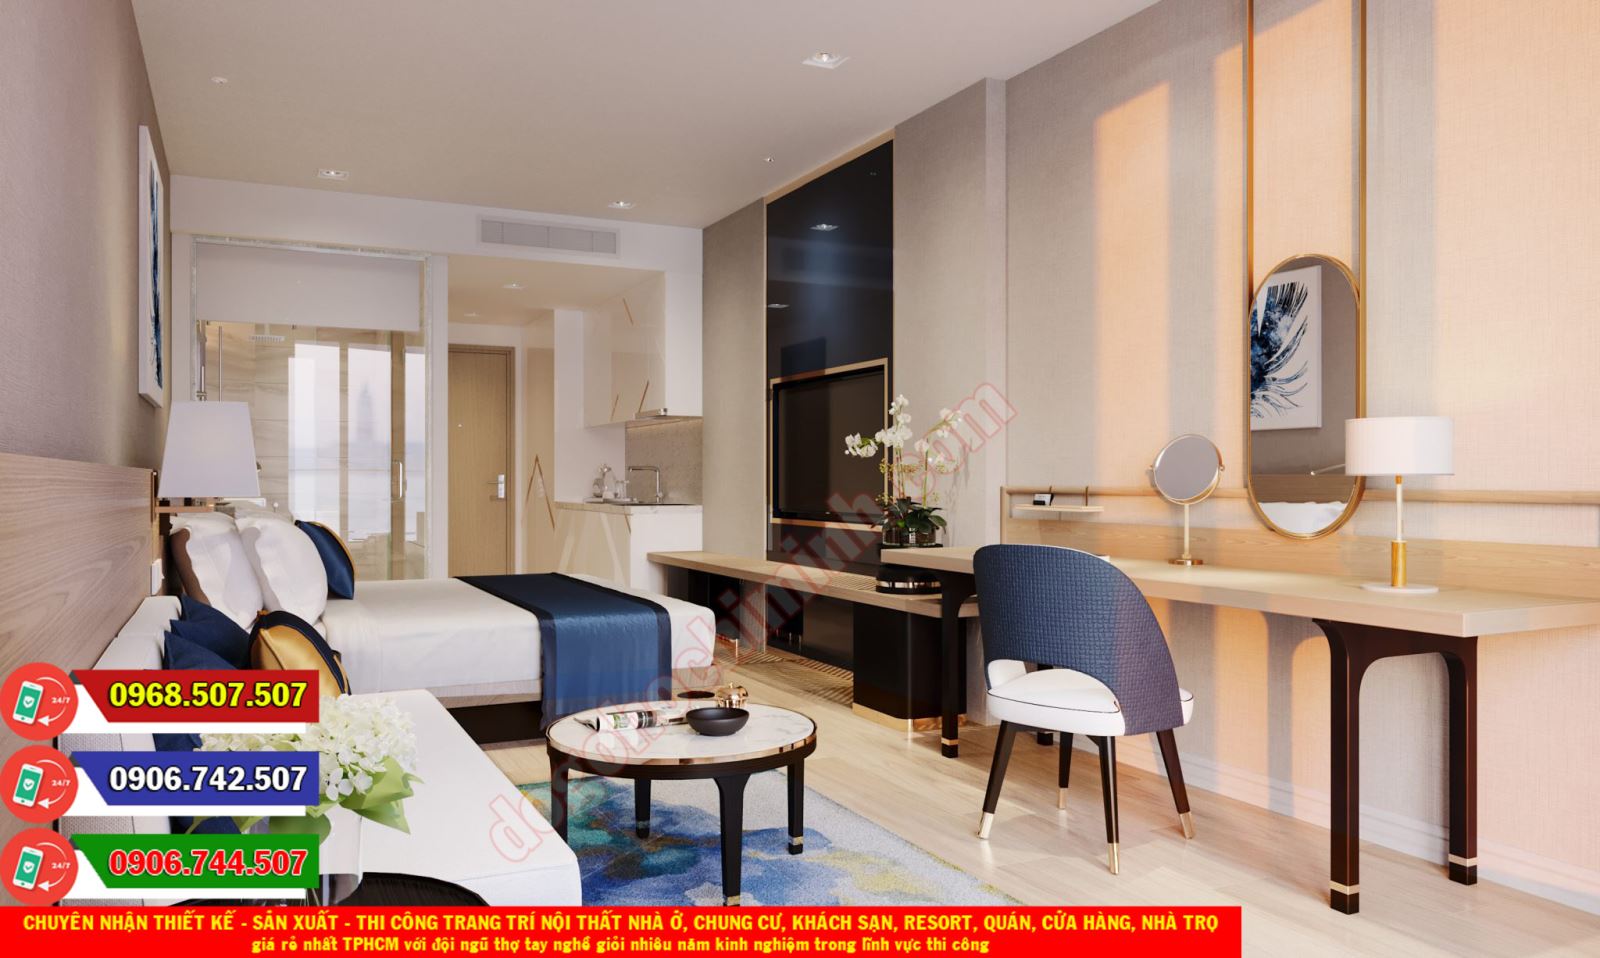 Làm mới không gian nghỉ dưỡng của bạn với những món đồ gỗ nội thất đẳng cấp nhất từ khách sạn resort. Hãy xem ngay những hình ảnh liên quan để có được sự lựa chọn tốt nhất cho không gian của bạn!